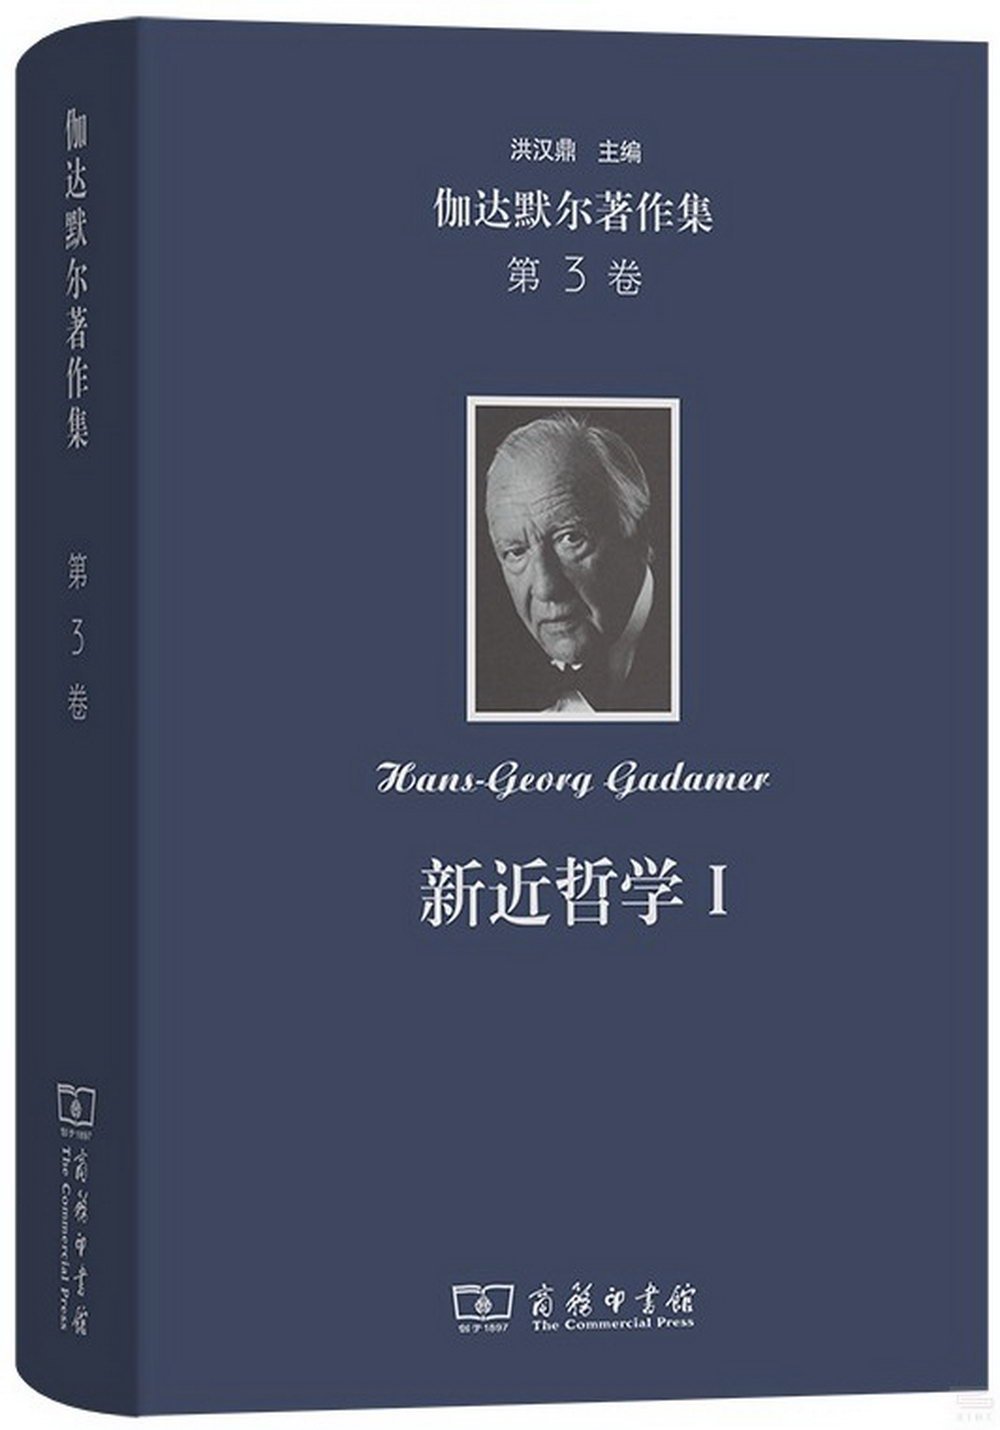 伽達默爾著作集第3卷：新近哲學(Ⅰ)